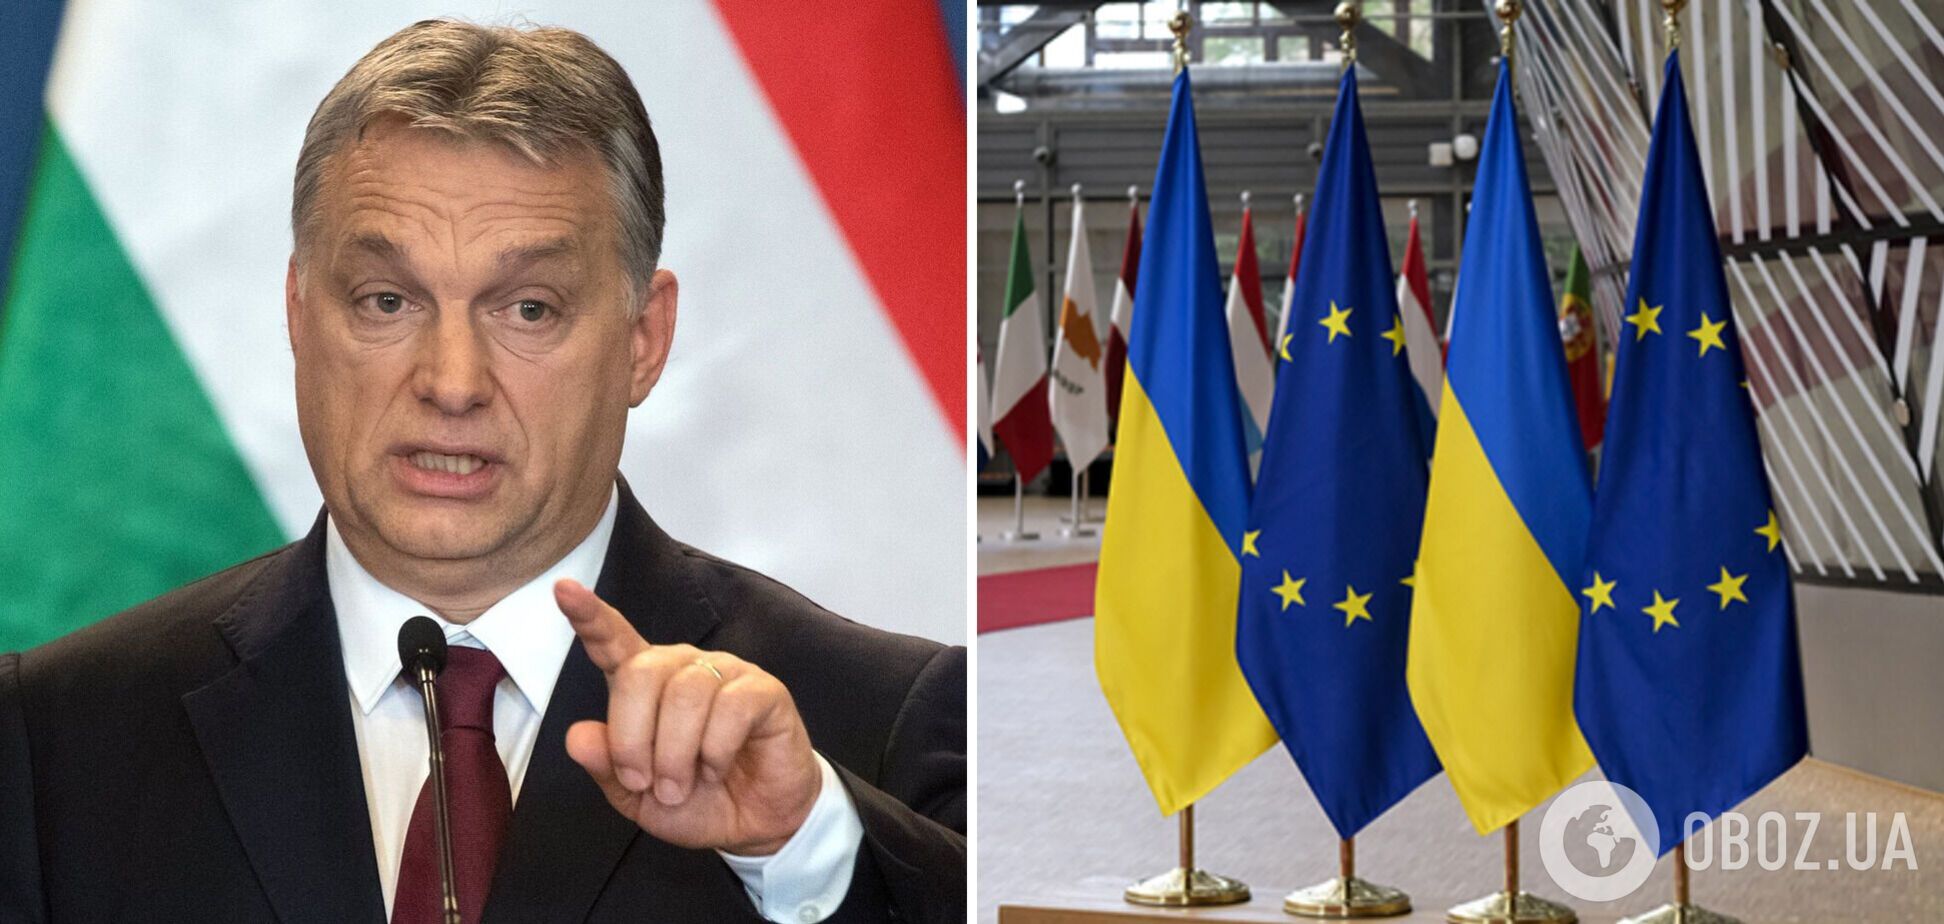 Уряд Орбана в Угорщині проведе опитування щодо вступу України до ЄС